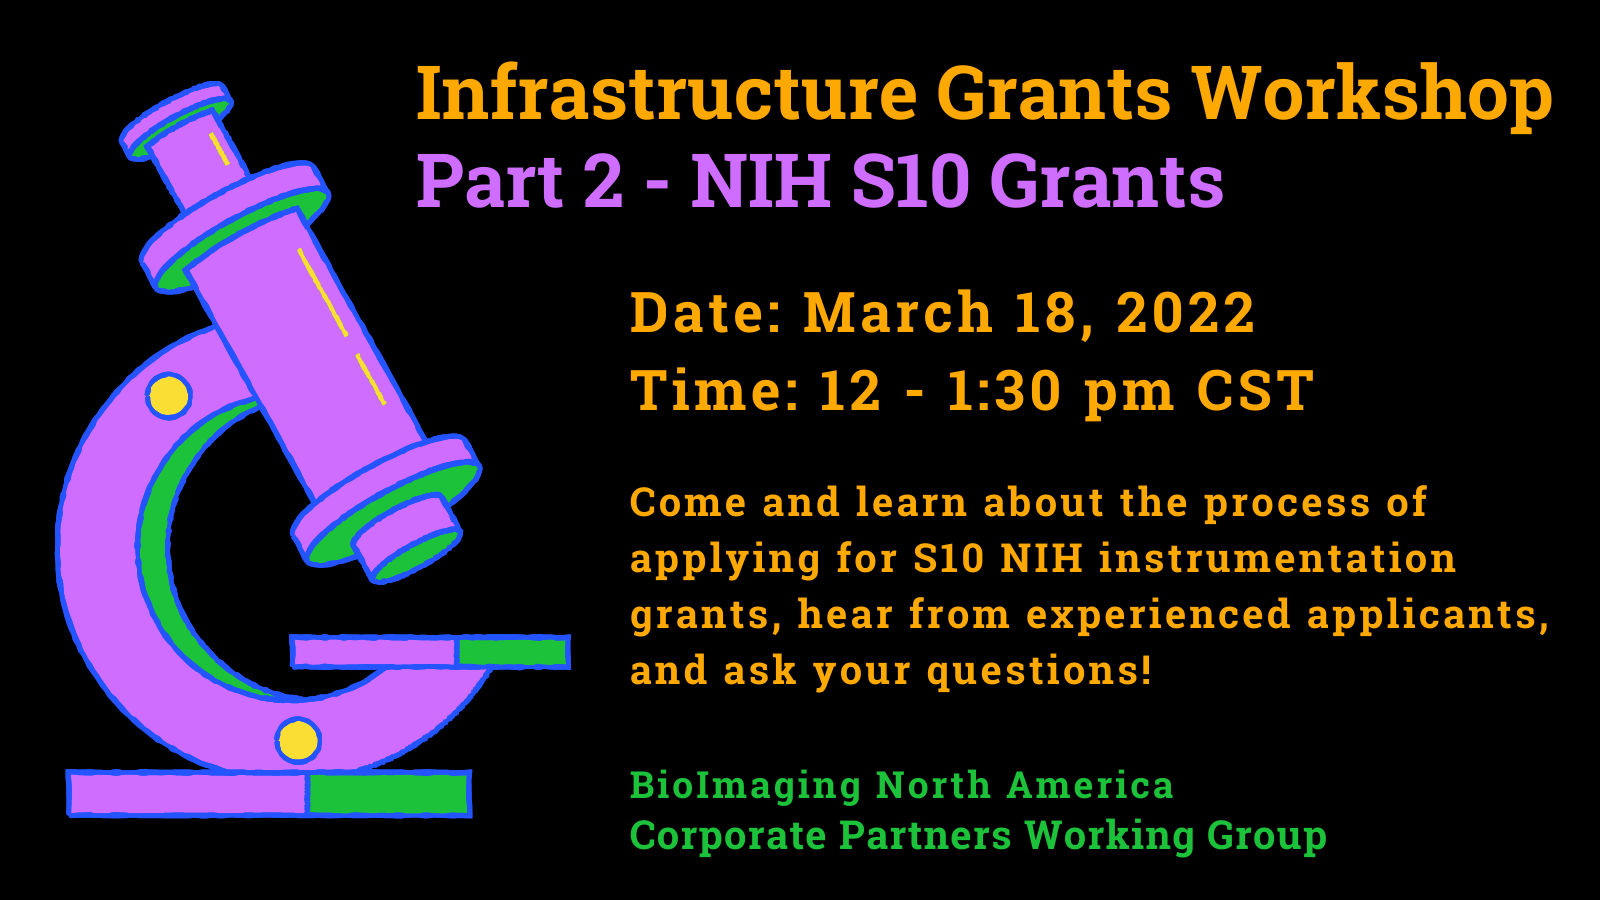 Infrastructure Grants Workshop Part 2 - NIH S10 Grants 